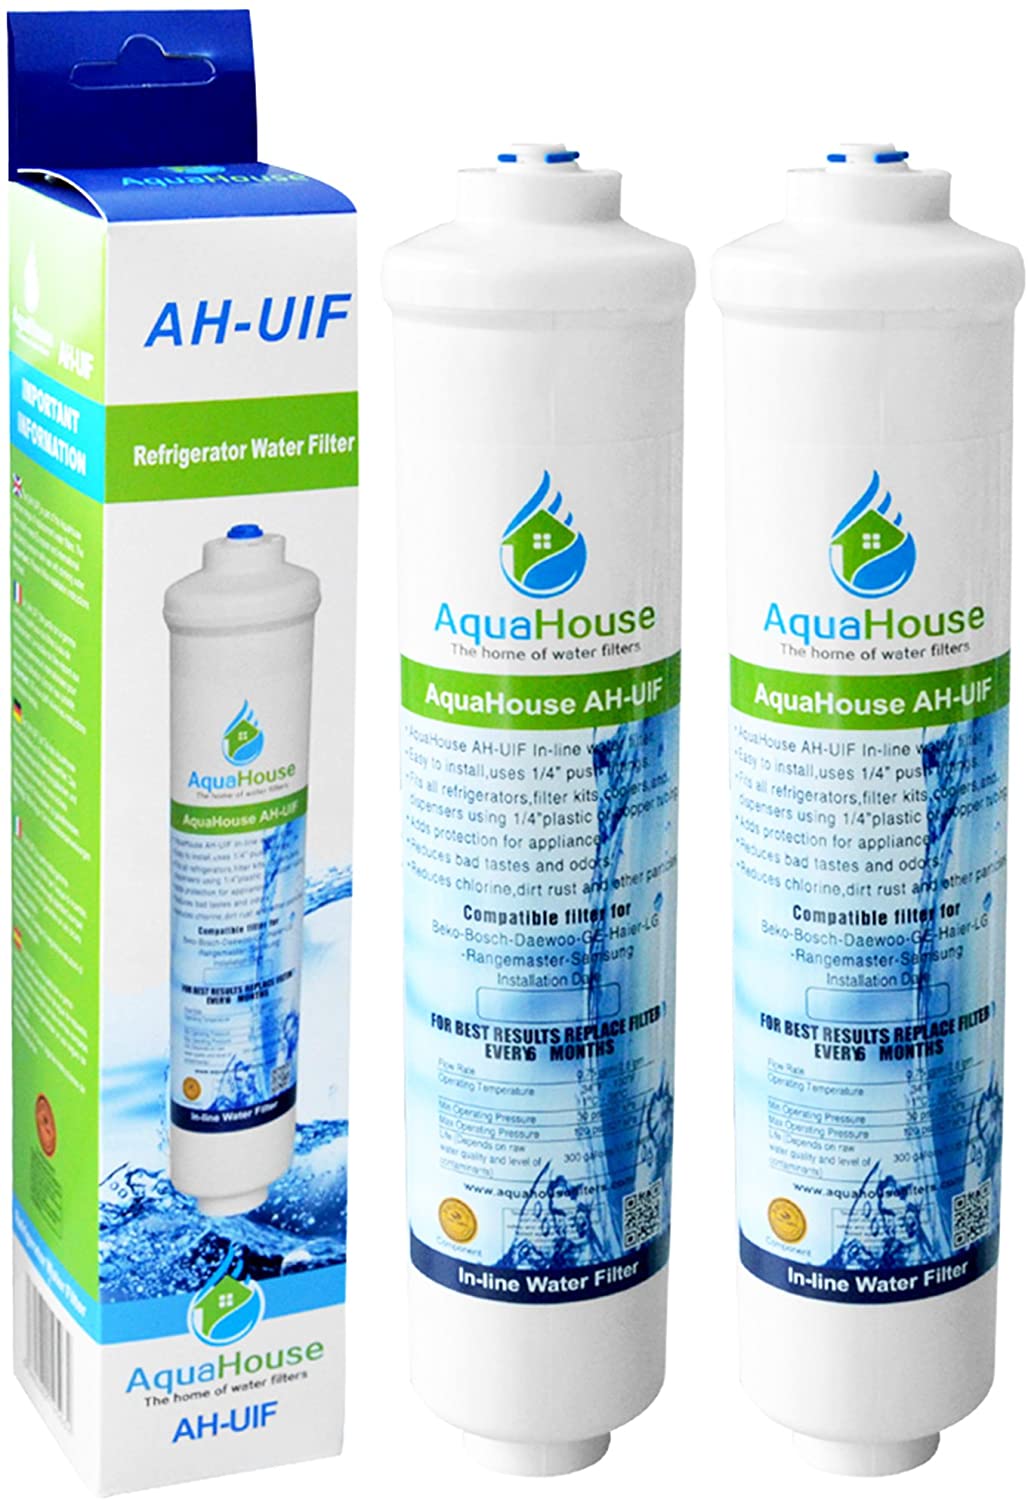 2x AquaHouse UIFS Compatibile Filtro Frigorifero acqua per Samsung DA29-10105J HAFEX/EXP WSF-100 Aqua-Pure Plus (filtro esterno solo)